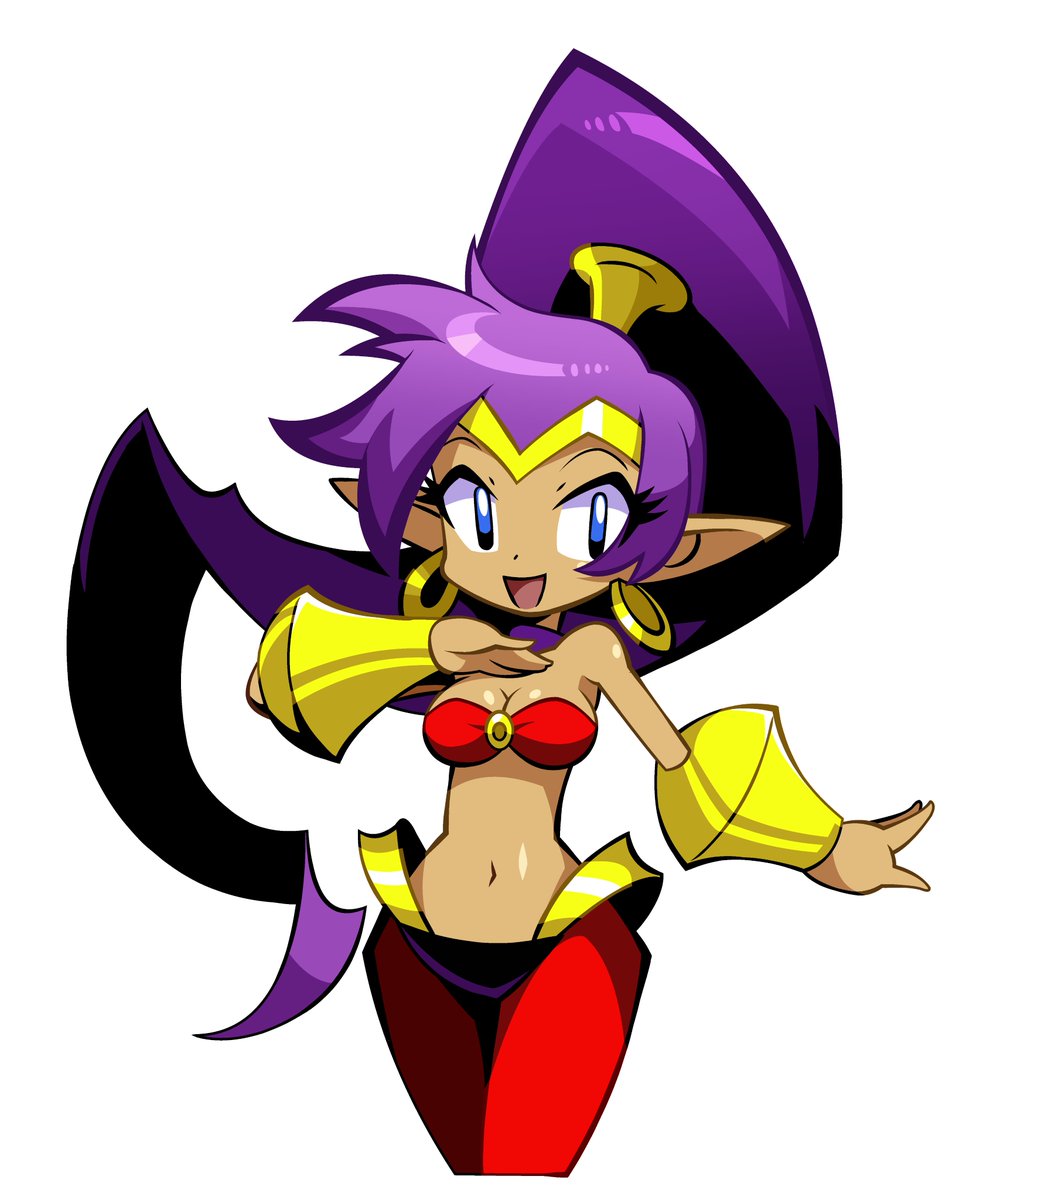 Commission for... @plushie01 #Shantae #ShantaeHalfGenieHero